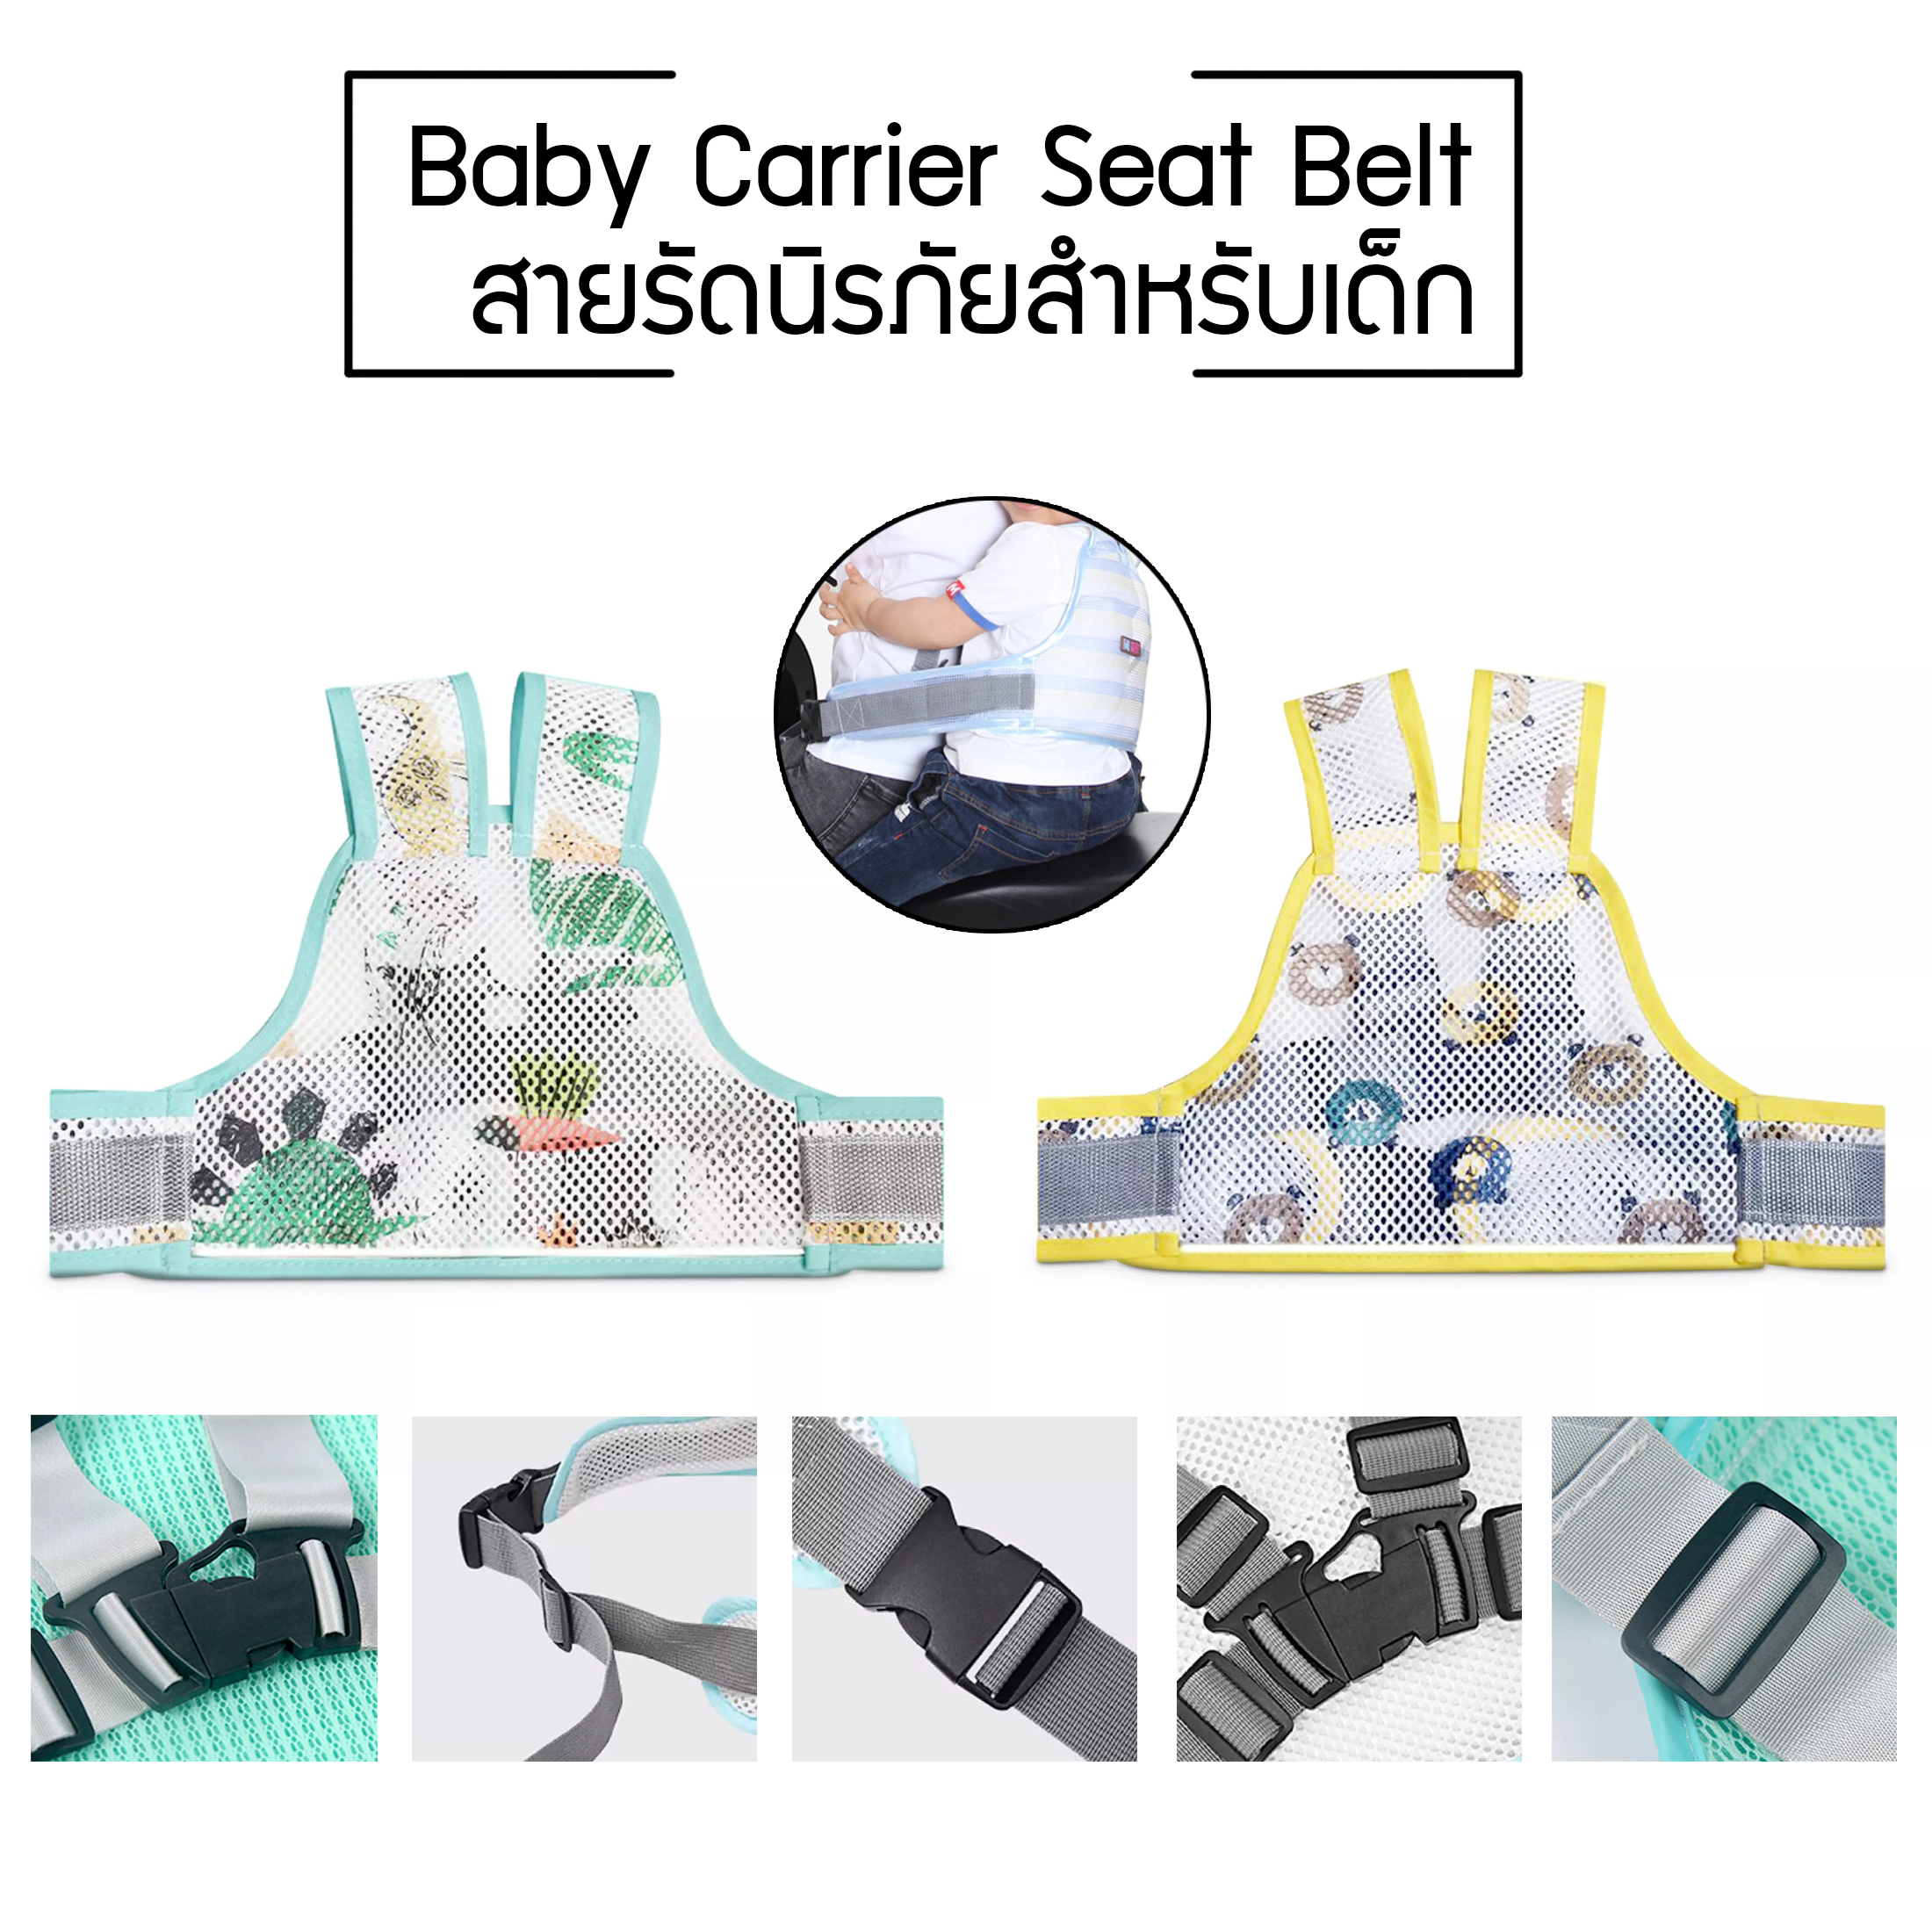 สายรัดนิรภัยเด็ก สำหรับเด็ก เข็มขัดนิรภัยเด็ก สายรัดเอวกันเด็กตก ป้องกันเด็กตกรถ เพื่อความปลอดภัย Baby Carrier Seat Belt  ร้าน Mart Club